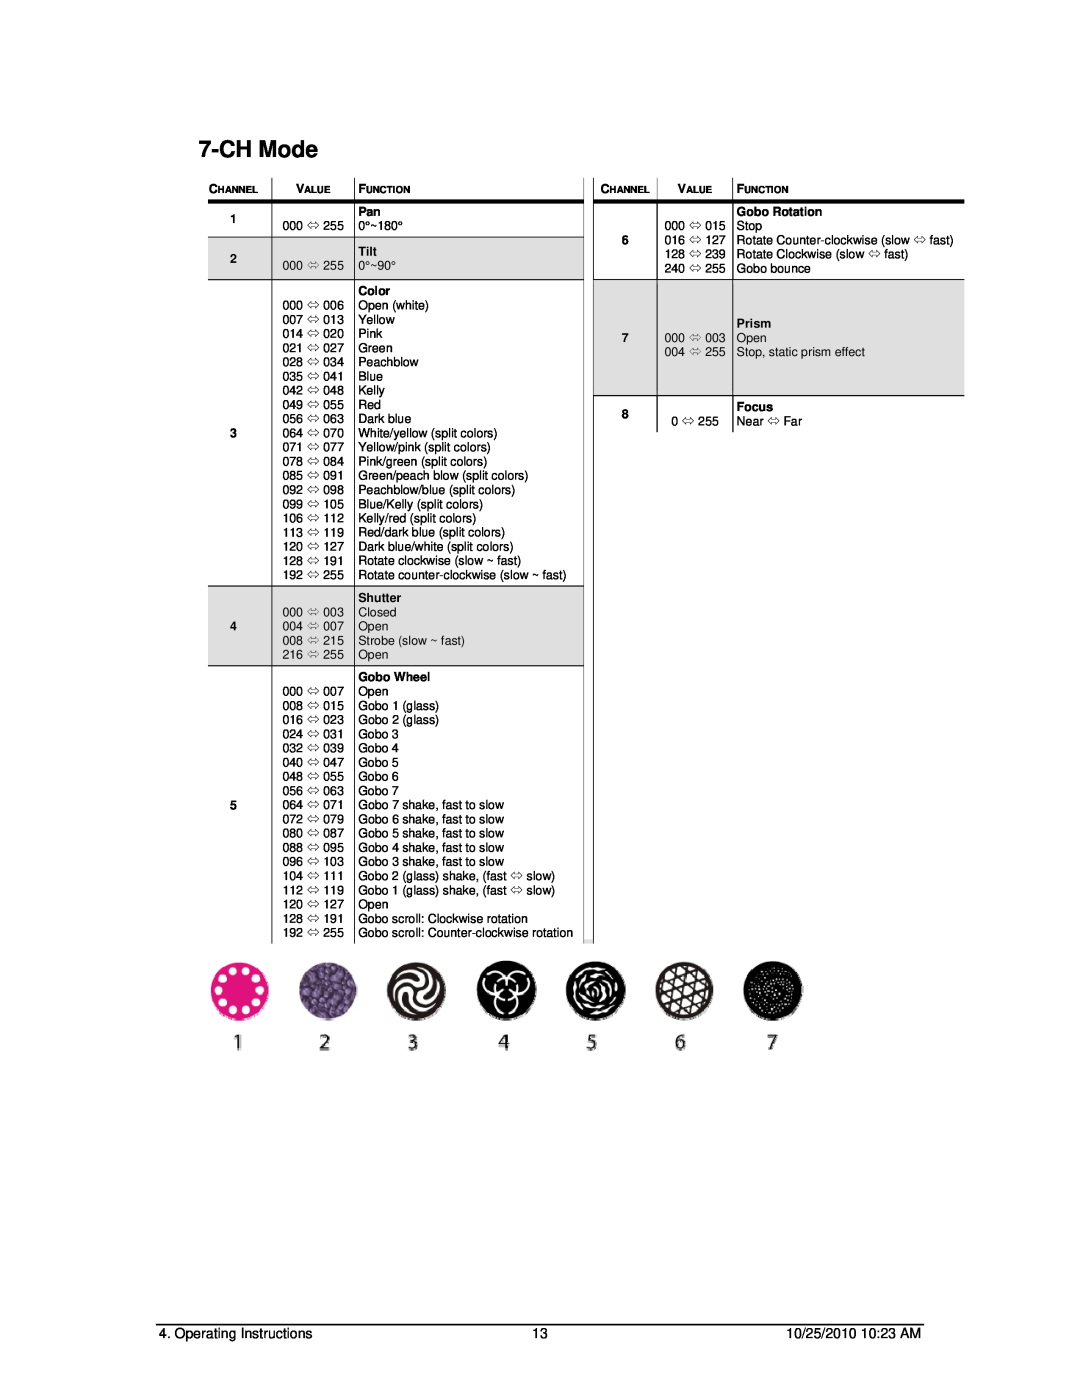 Chauvet SCAN LED 300 user manual CH Mode, Tilt, Color, Shutter, Gobo Wheel, Gobo Rotation, 000 Ù, Stop, Prism, Focus 